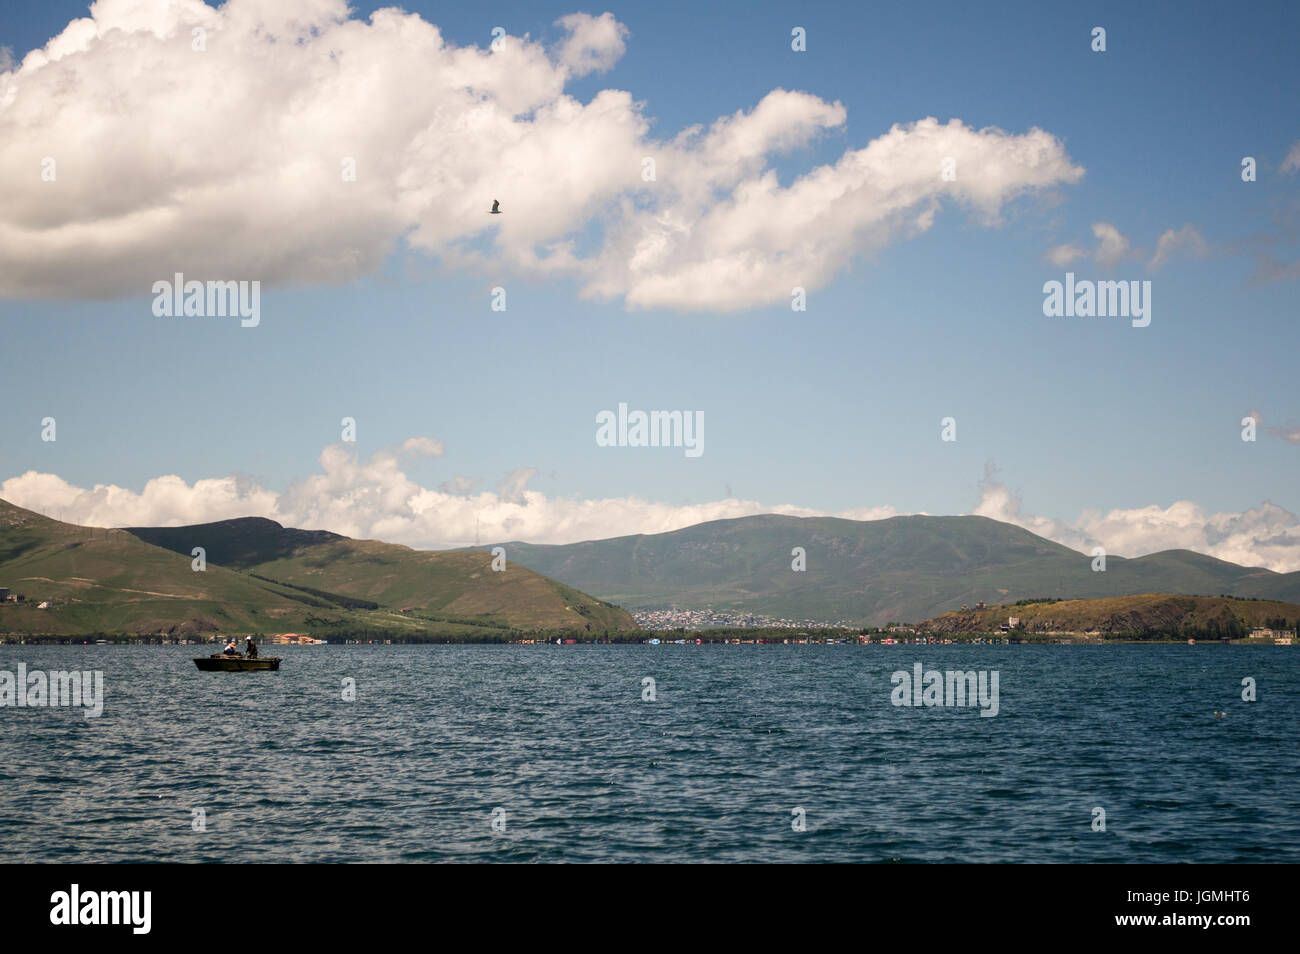 Barco de pesca en el Lago Sevan en Armenia con nubes y montañas. Foto de stock